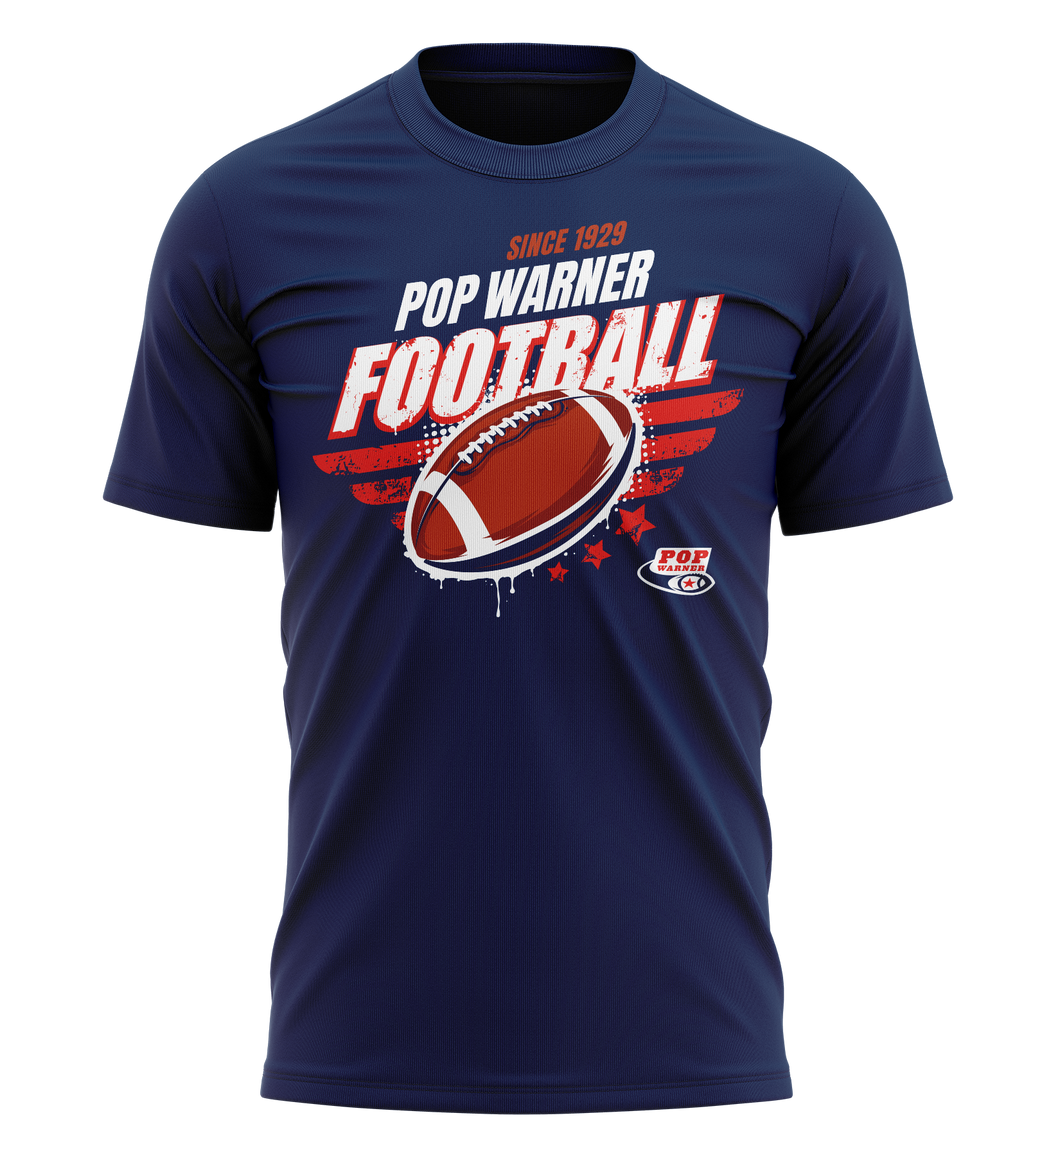 Pop Warner Football T-Shirt Since 1929